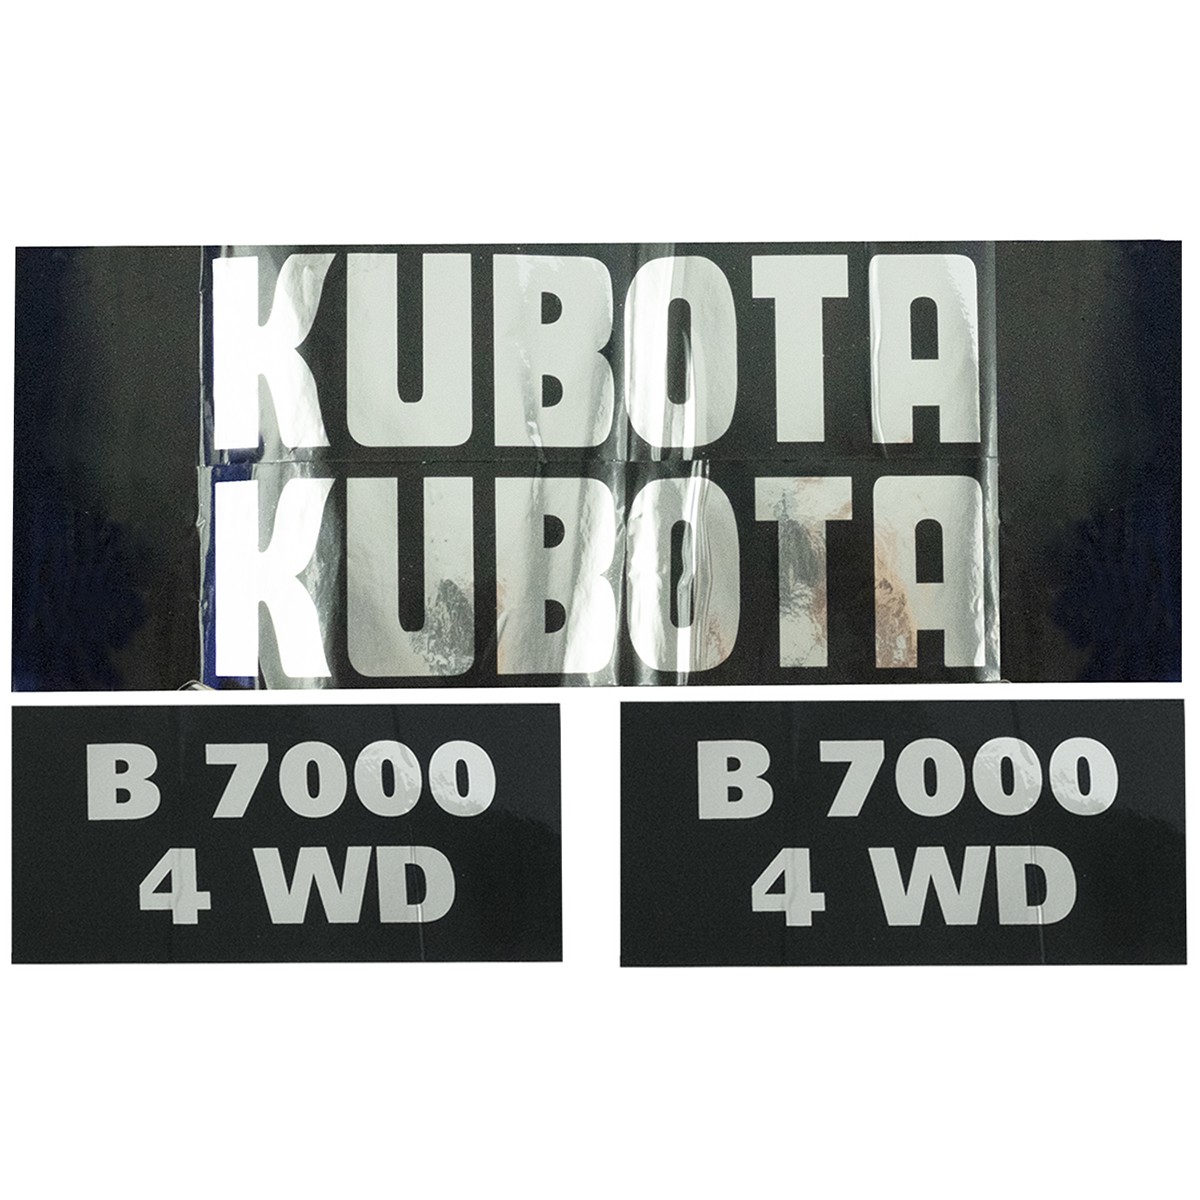 Kubota B7000 4WD stickers